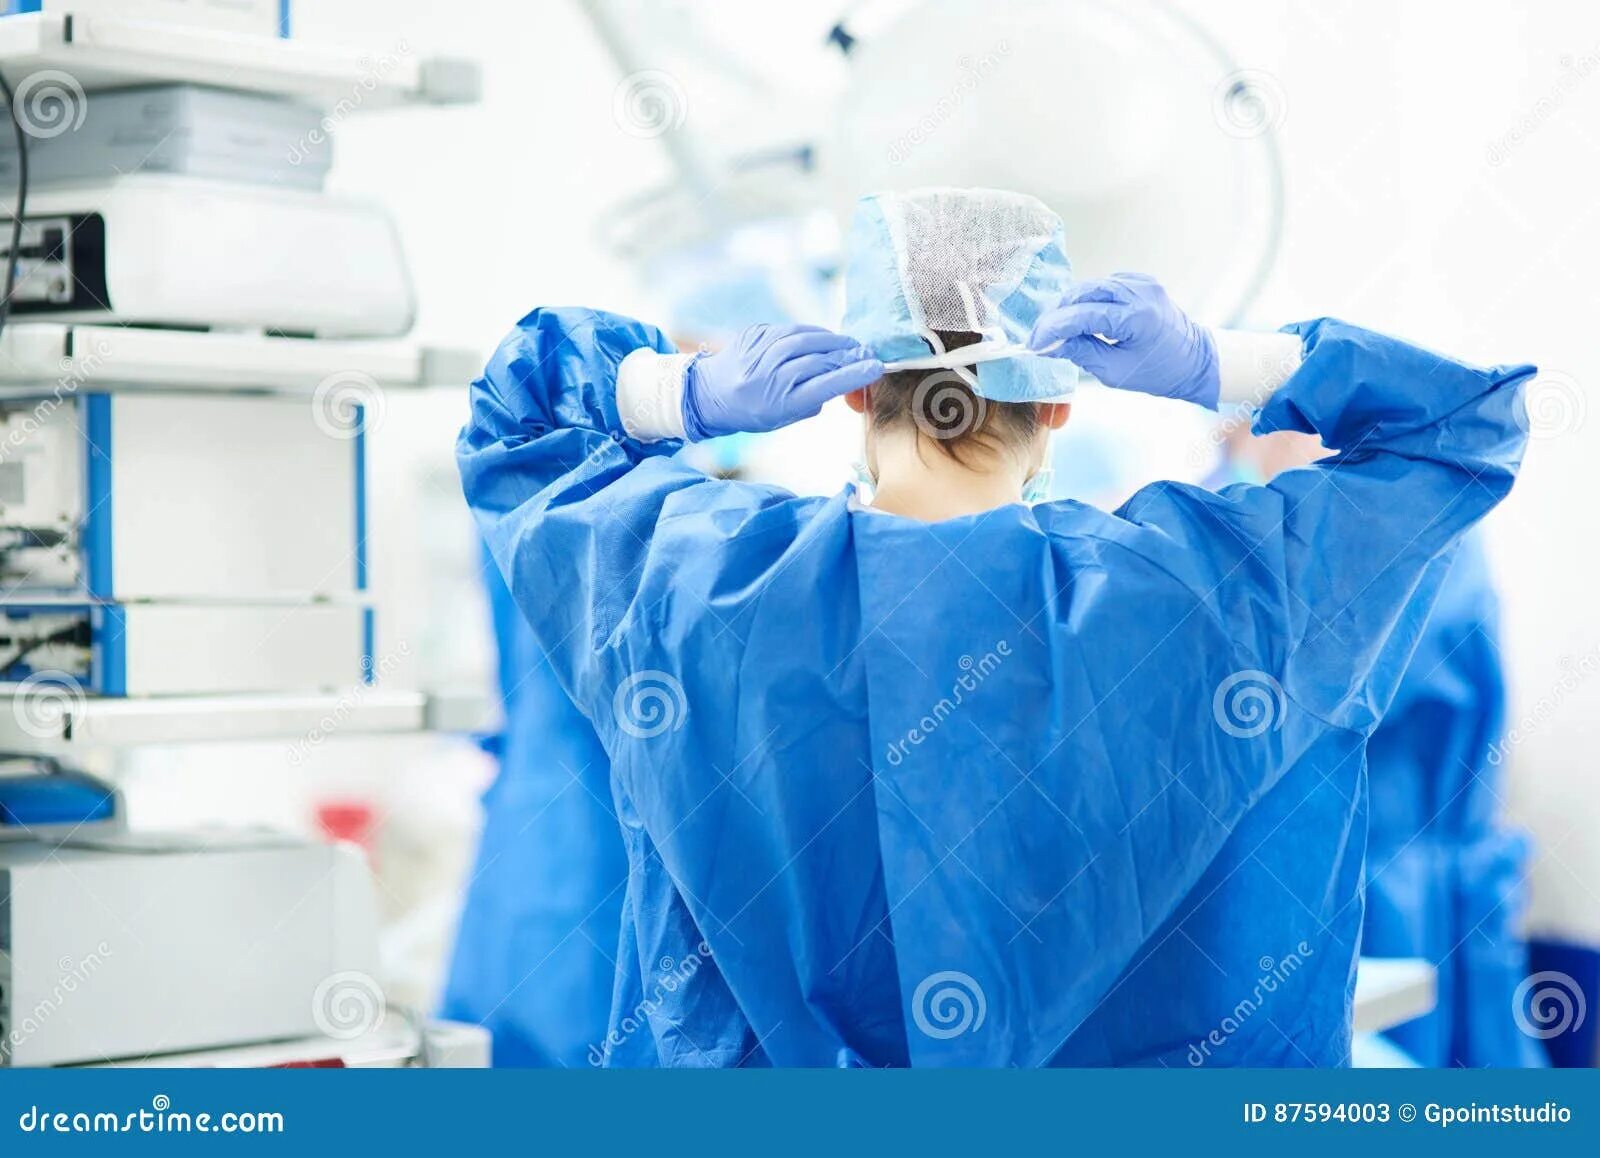 Руки доктора перед операцией. Подготовка рук к операции картинки.